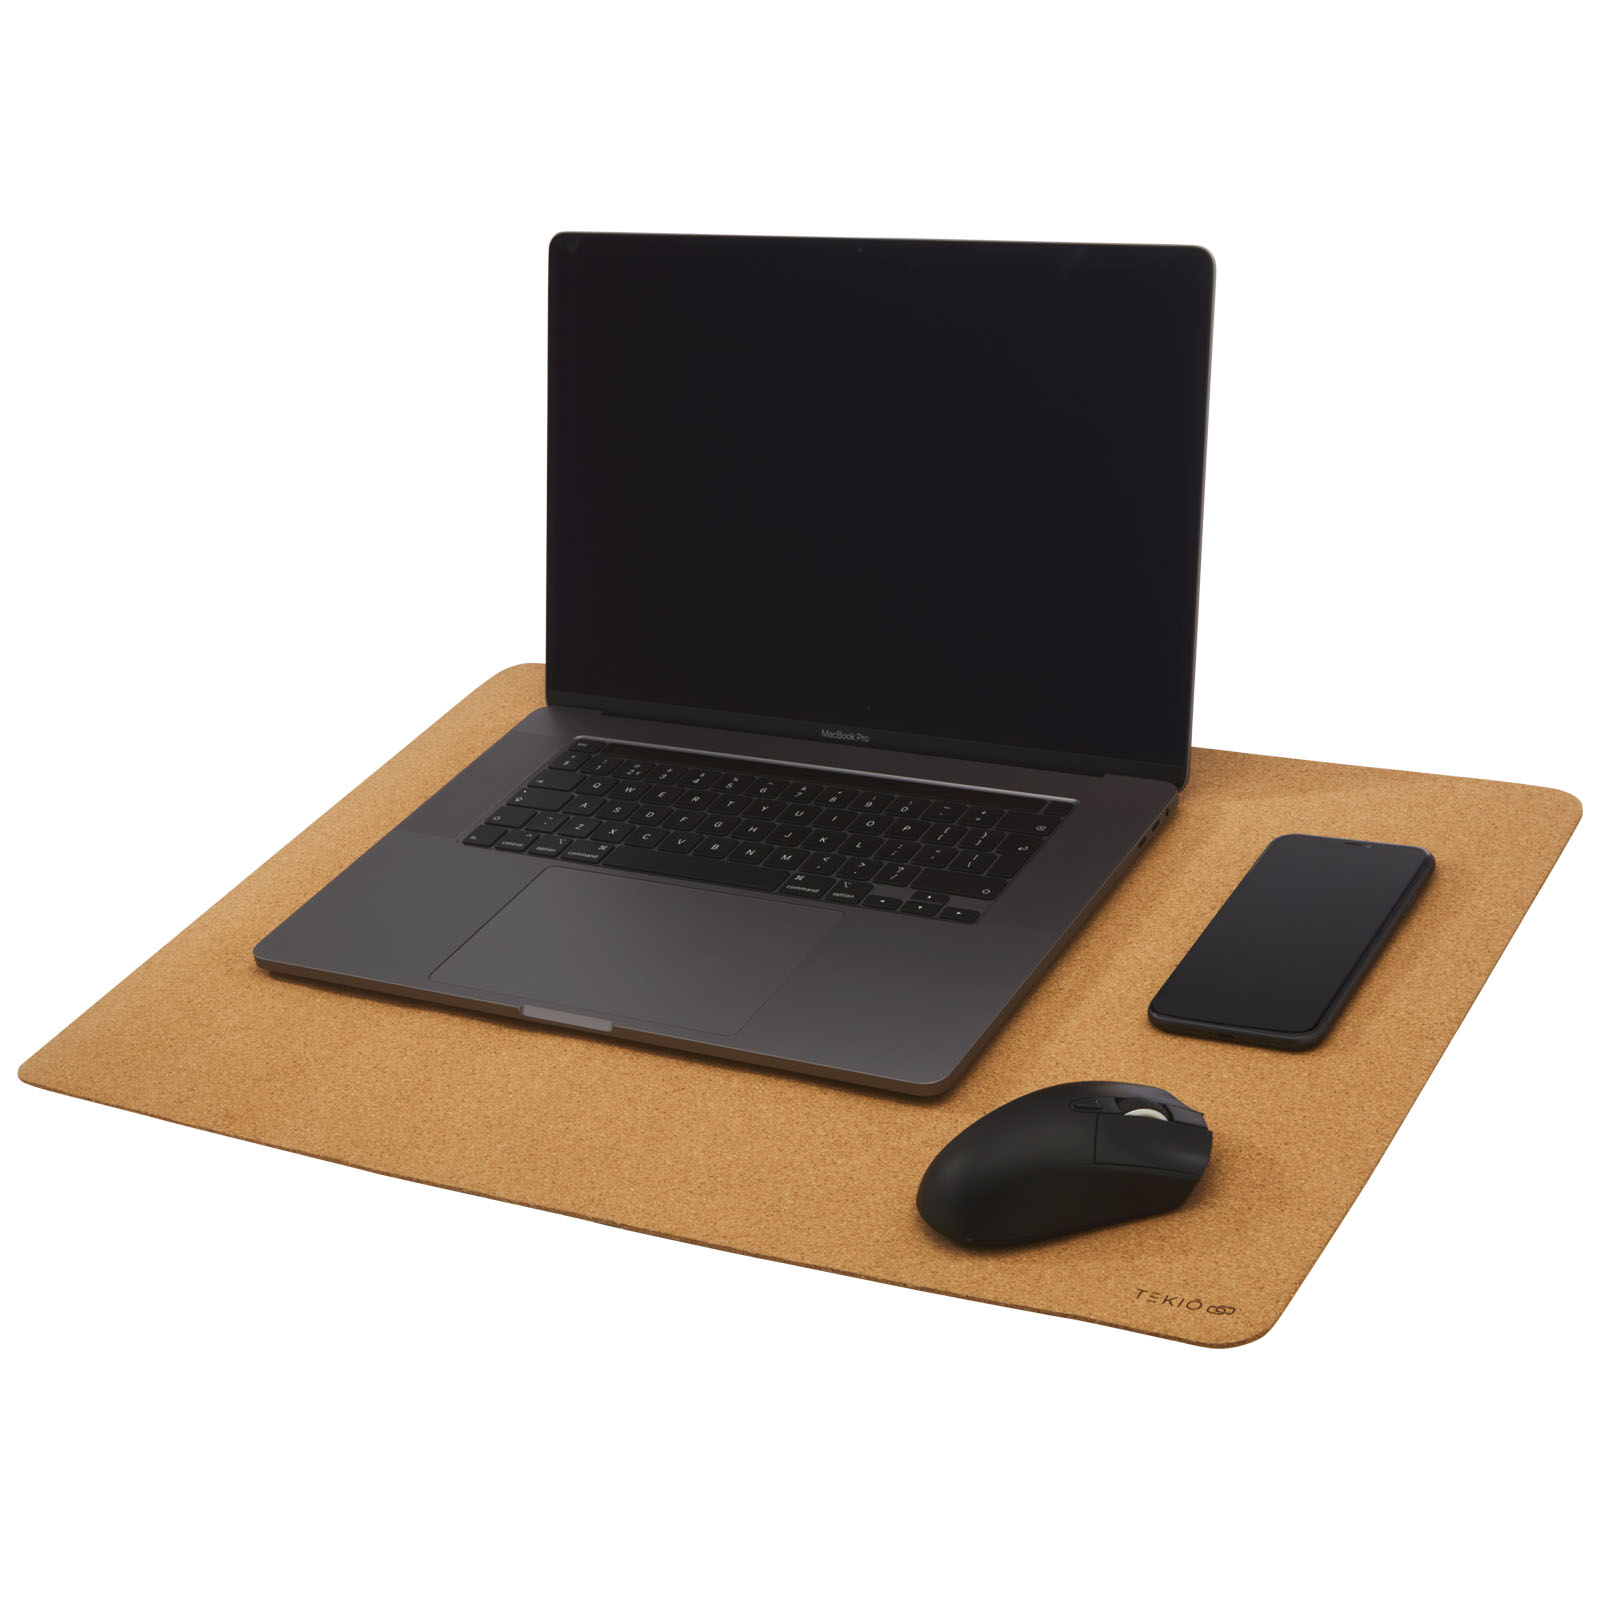 Advertising Desk Accessories - Cerris desk pad